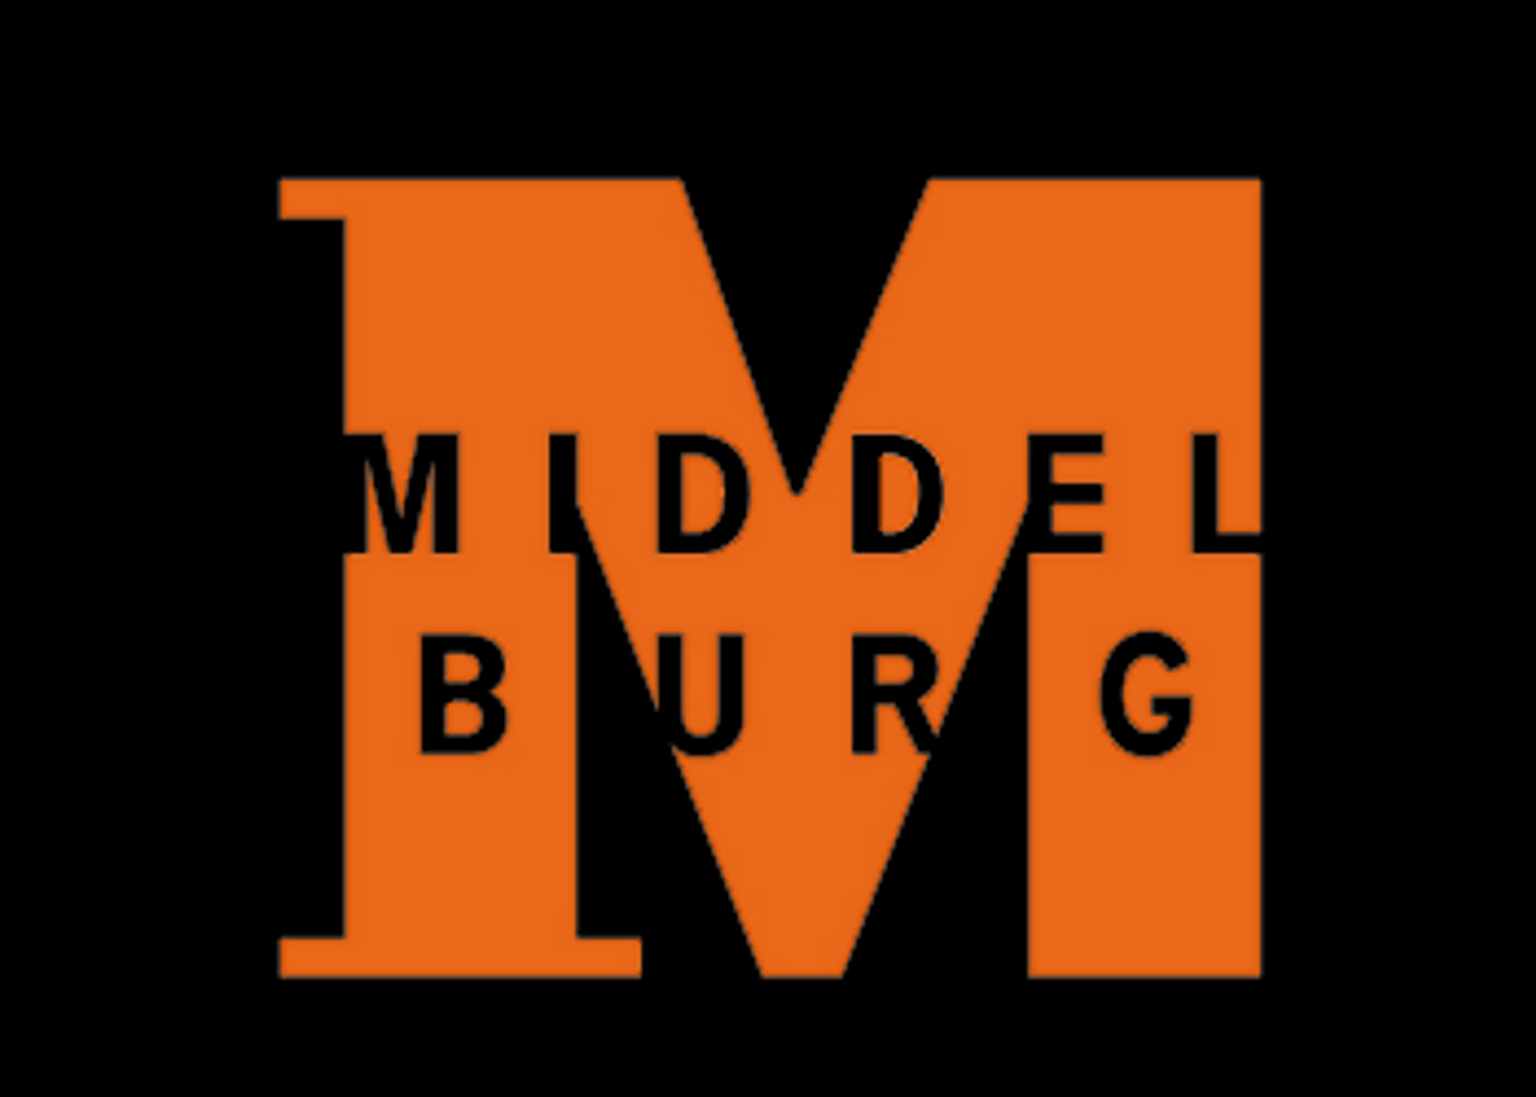 Gemeente Middelburg